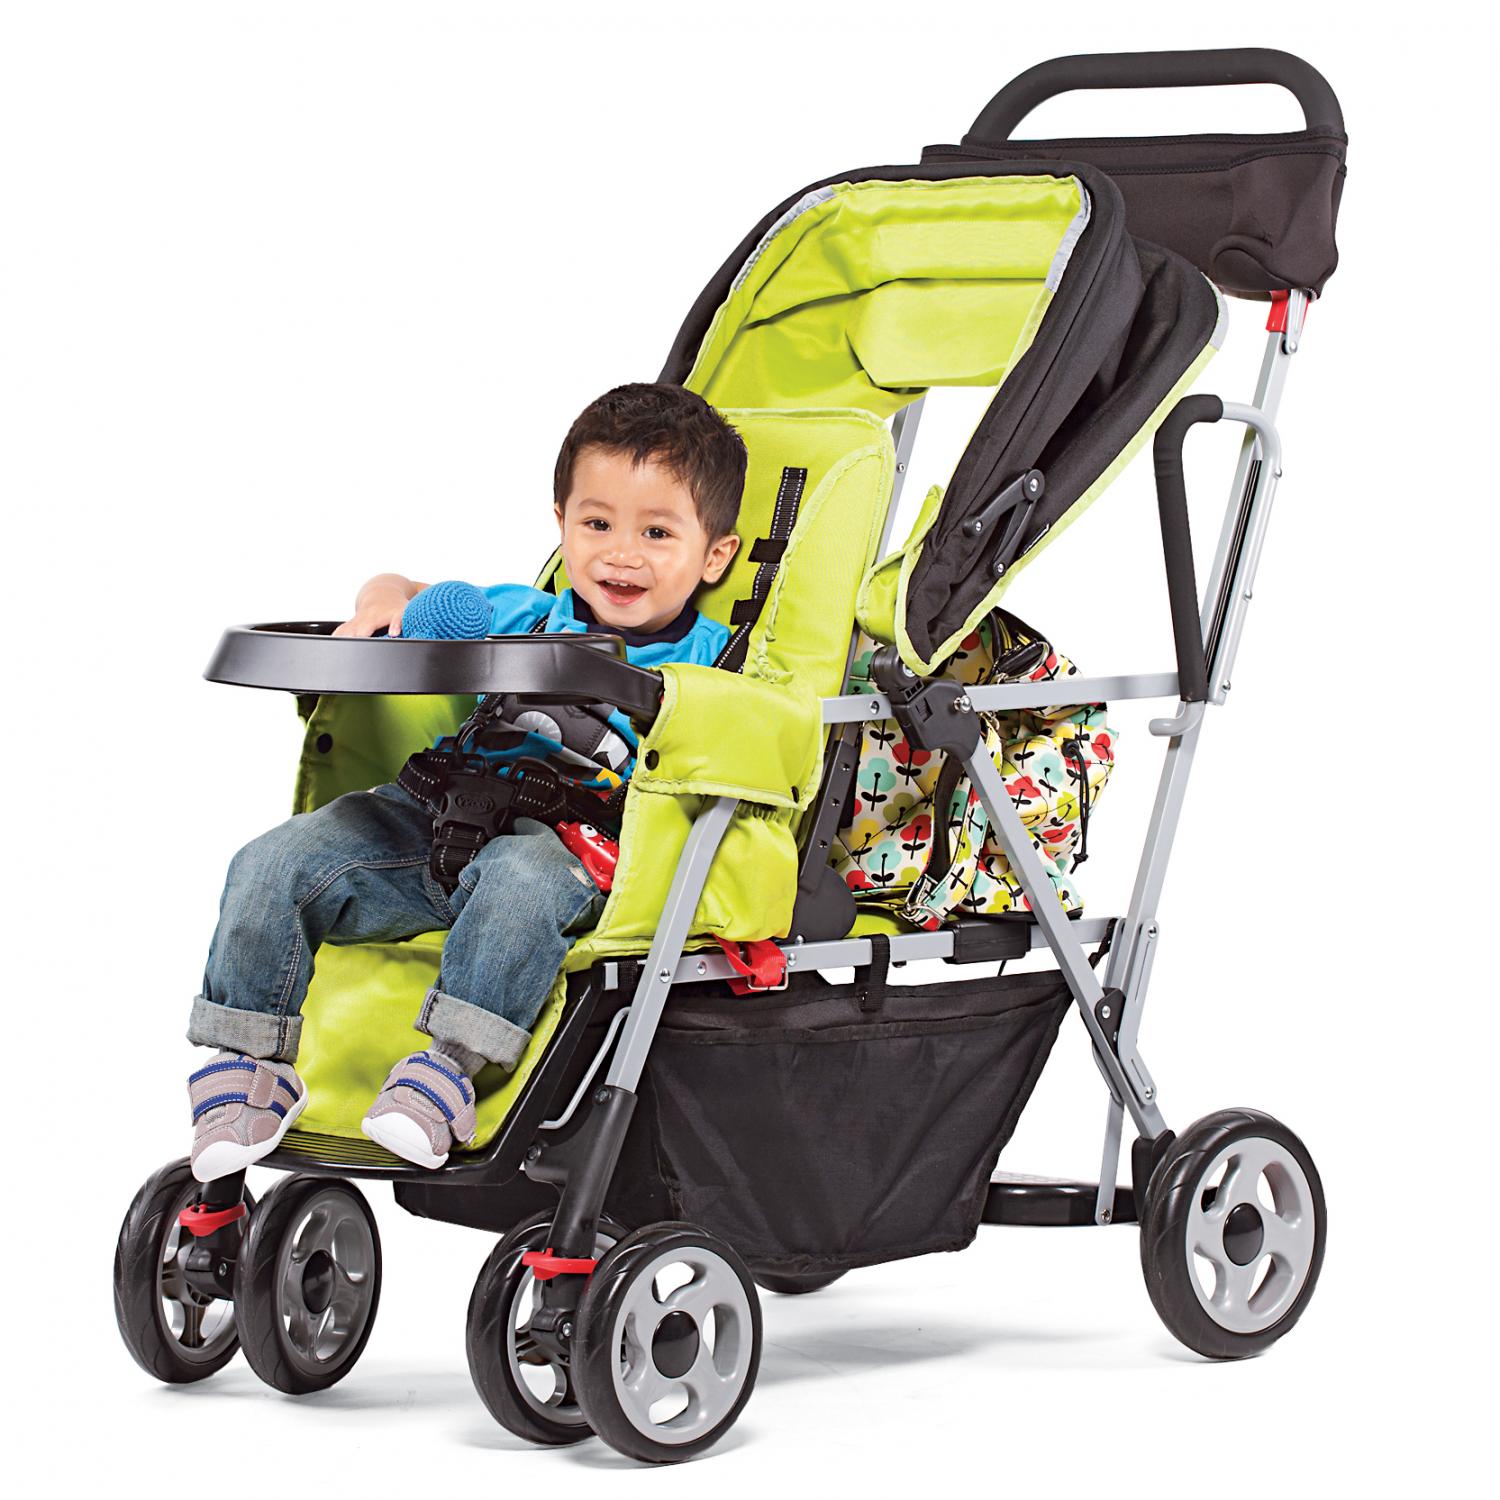 best stroller for tall toddler uk